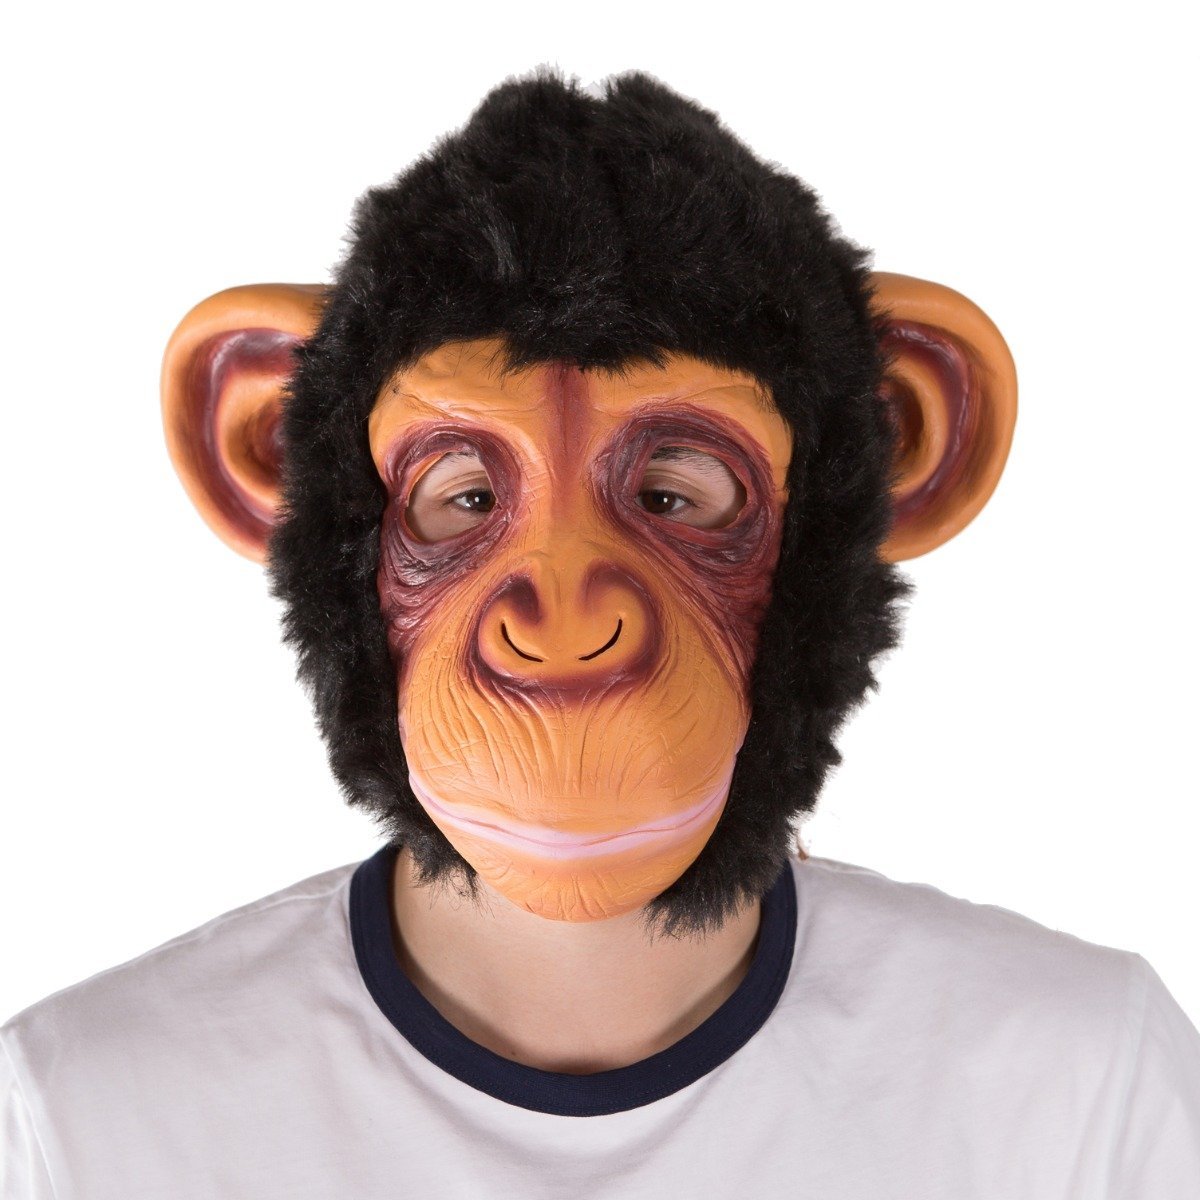 Bodysocks - Latex Monkey Mask